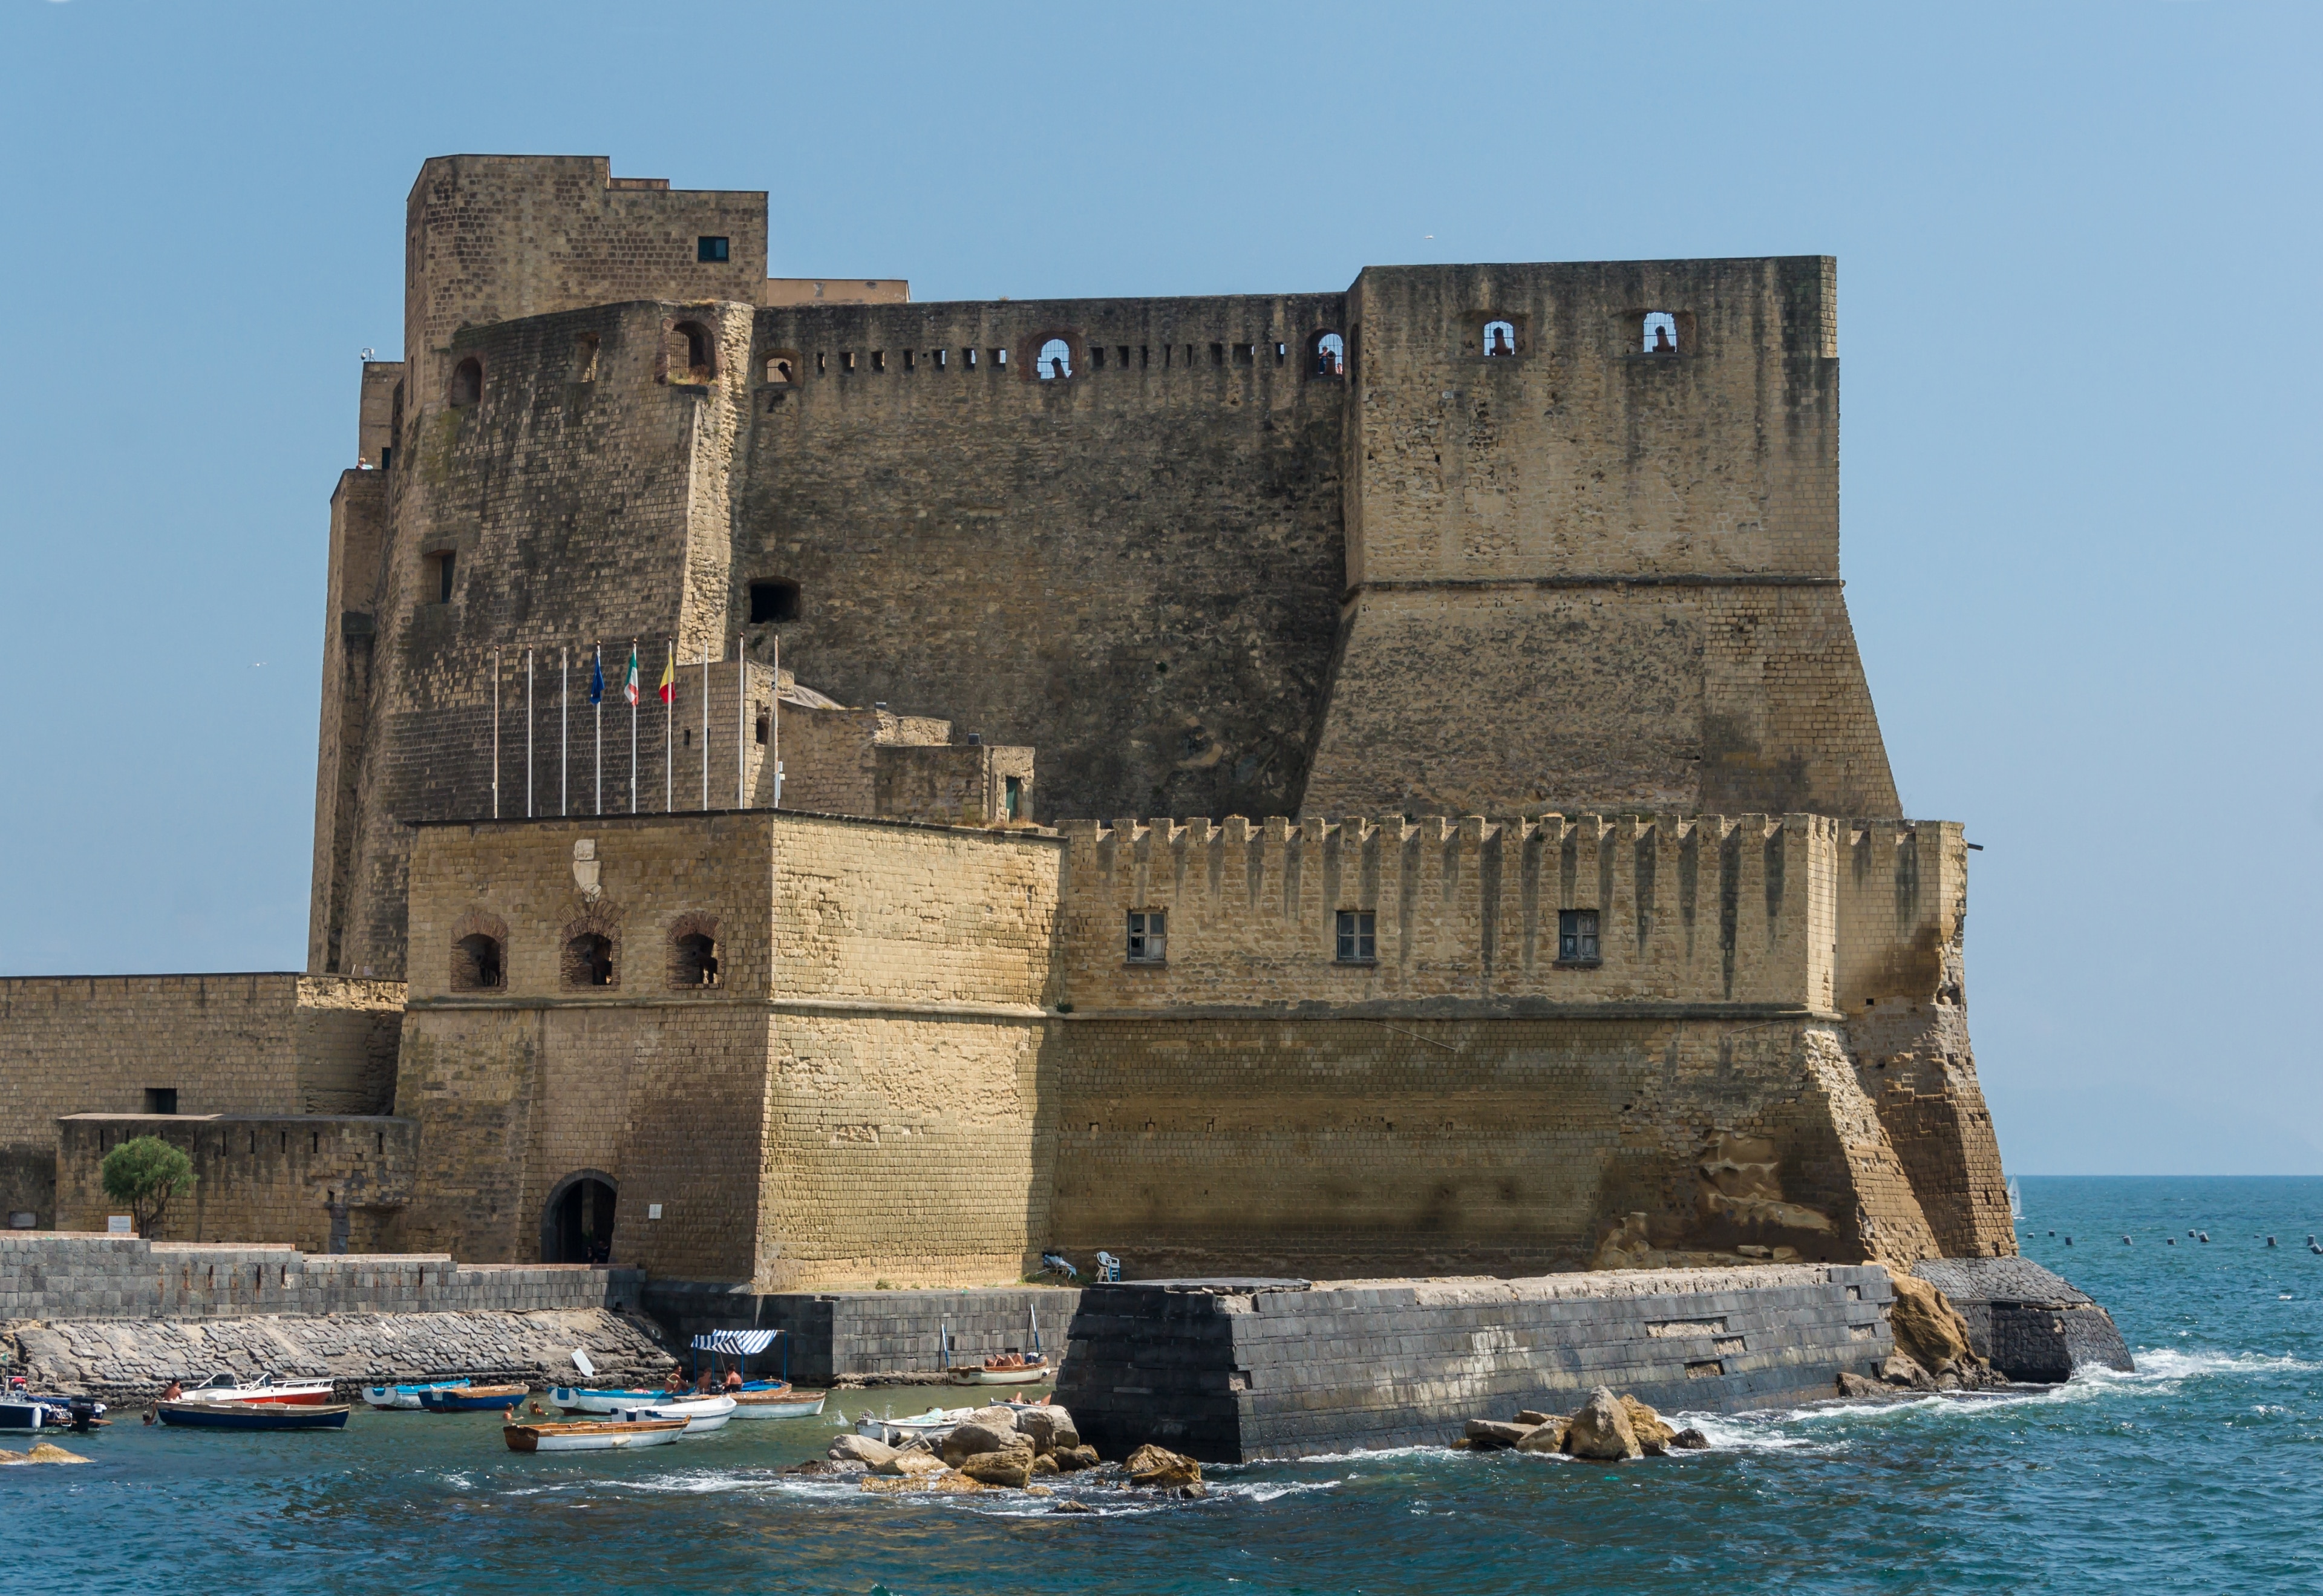 Castel del'Ovo in Naples, Italy.